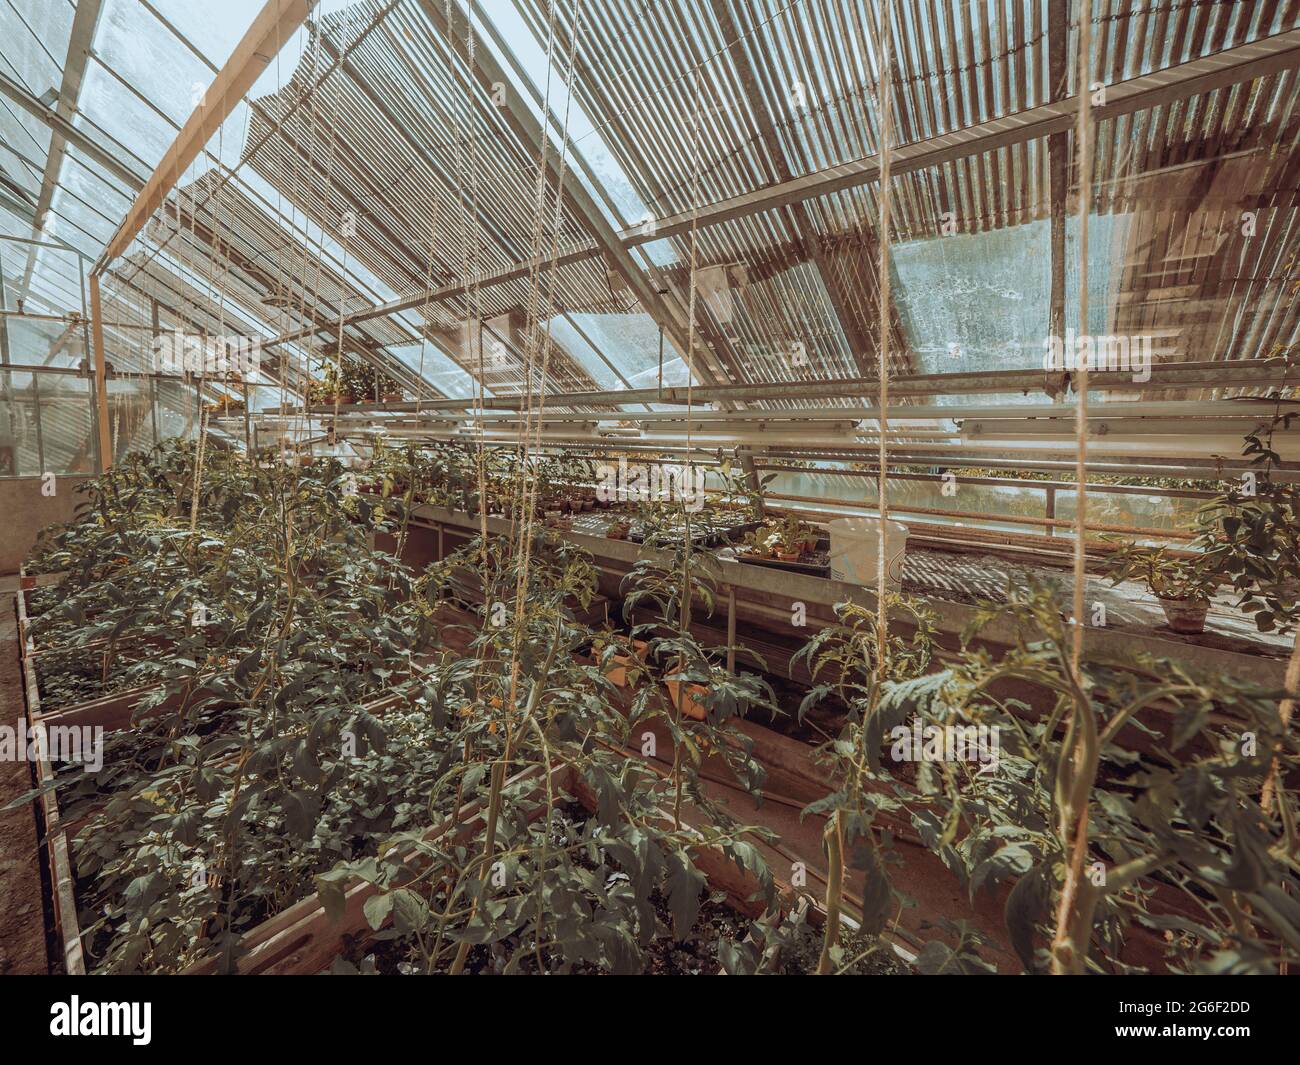 La exuberante colección de plantas vegetales de jardín o plantas exóticas de la casa se cultivan bajo el techo de cristal de un antiguo invernadero victoriano. Foto de stock